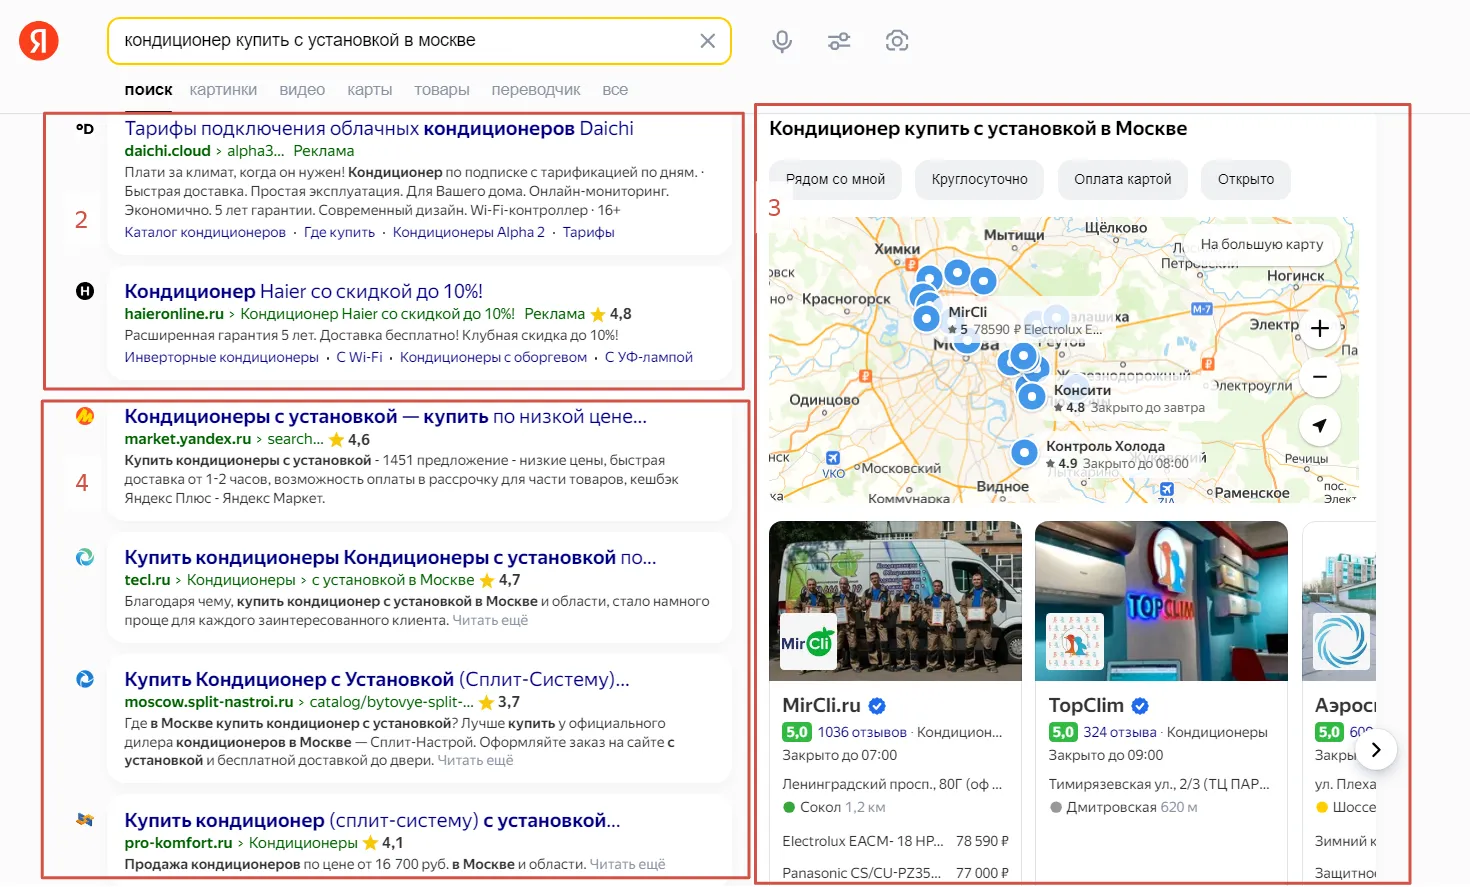 Контекстная реклама (2), Яндекс Карты (3), органическая выдача (4)